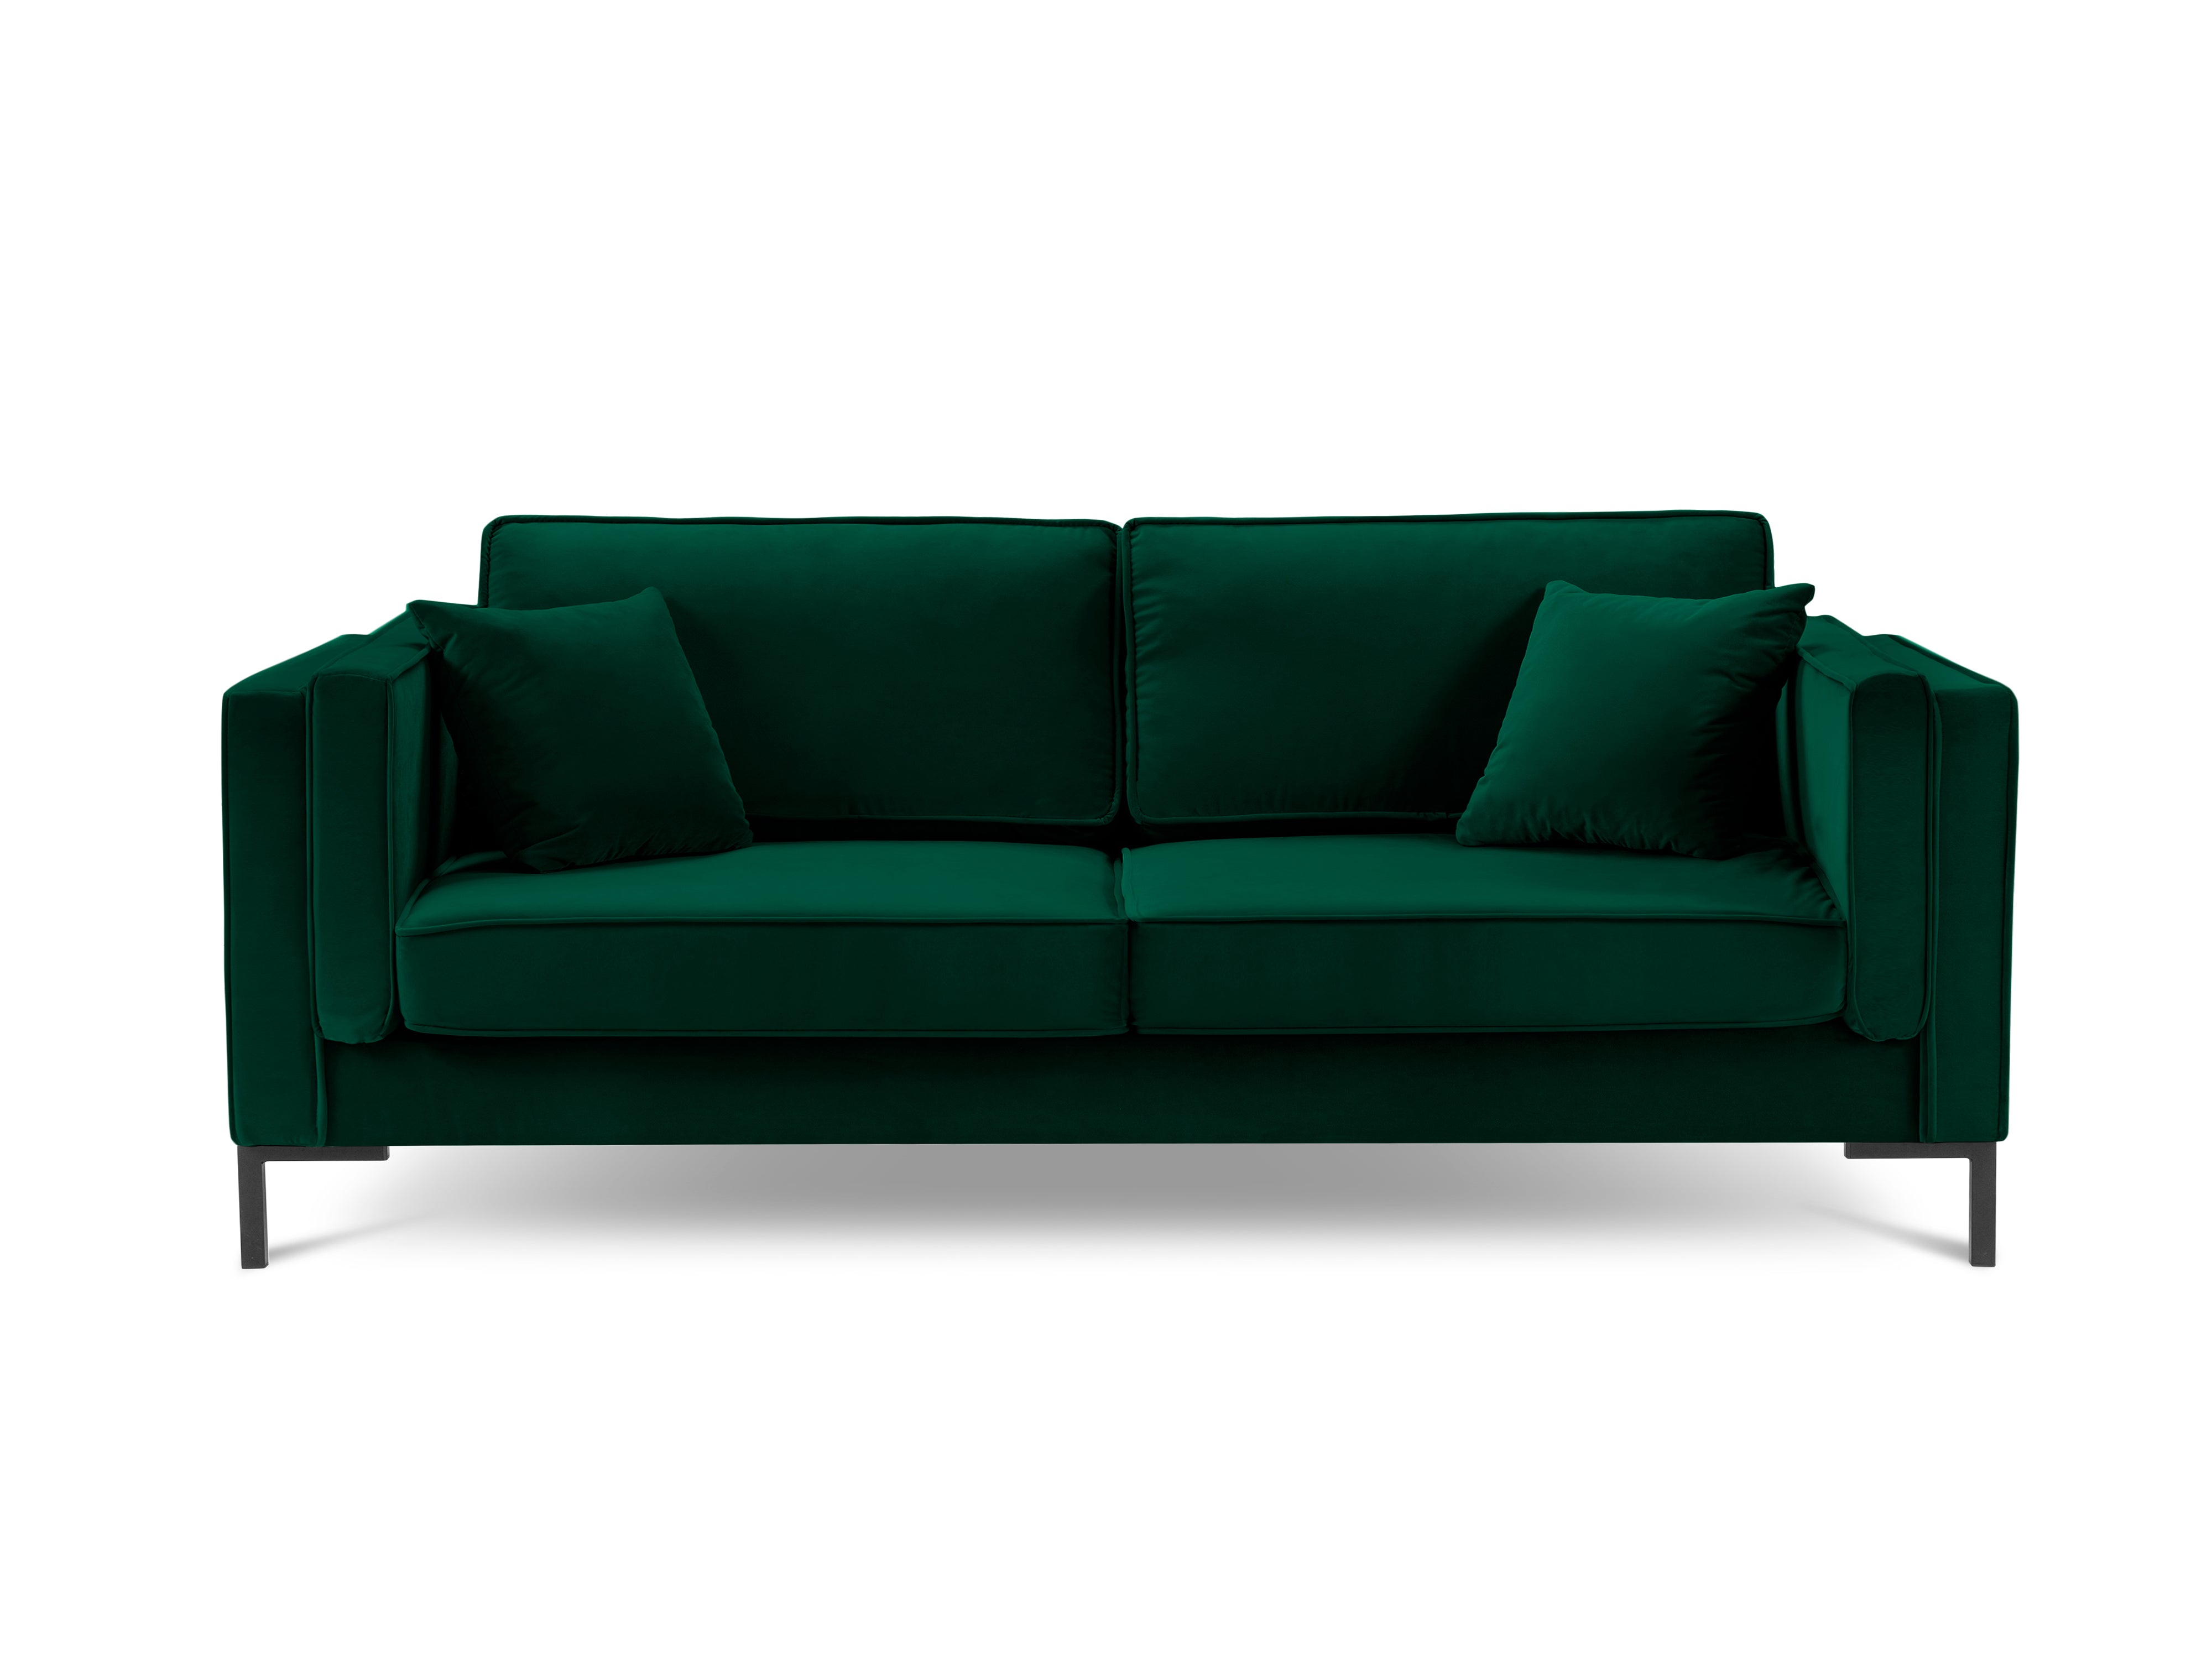 LUIS bottle green velvet 3-seater sofa with black base